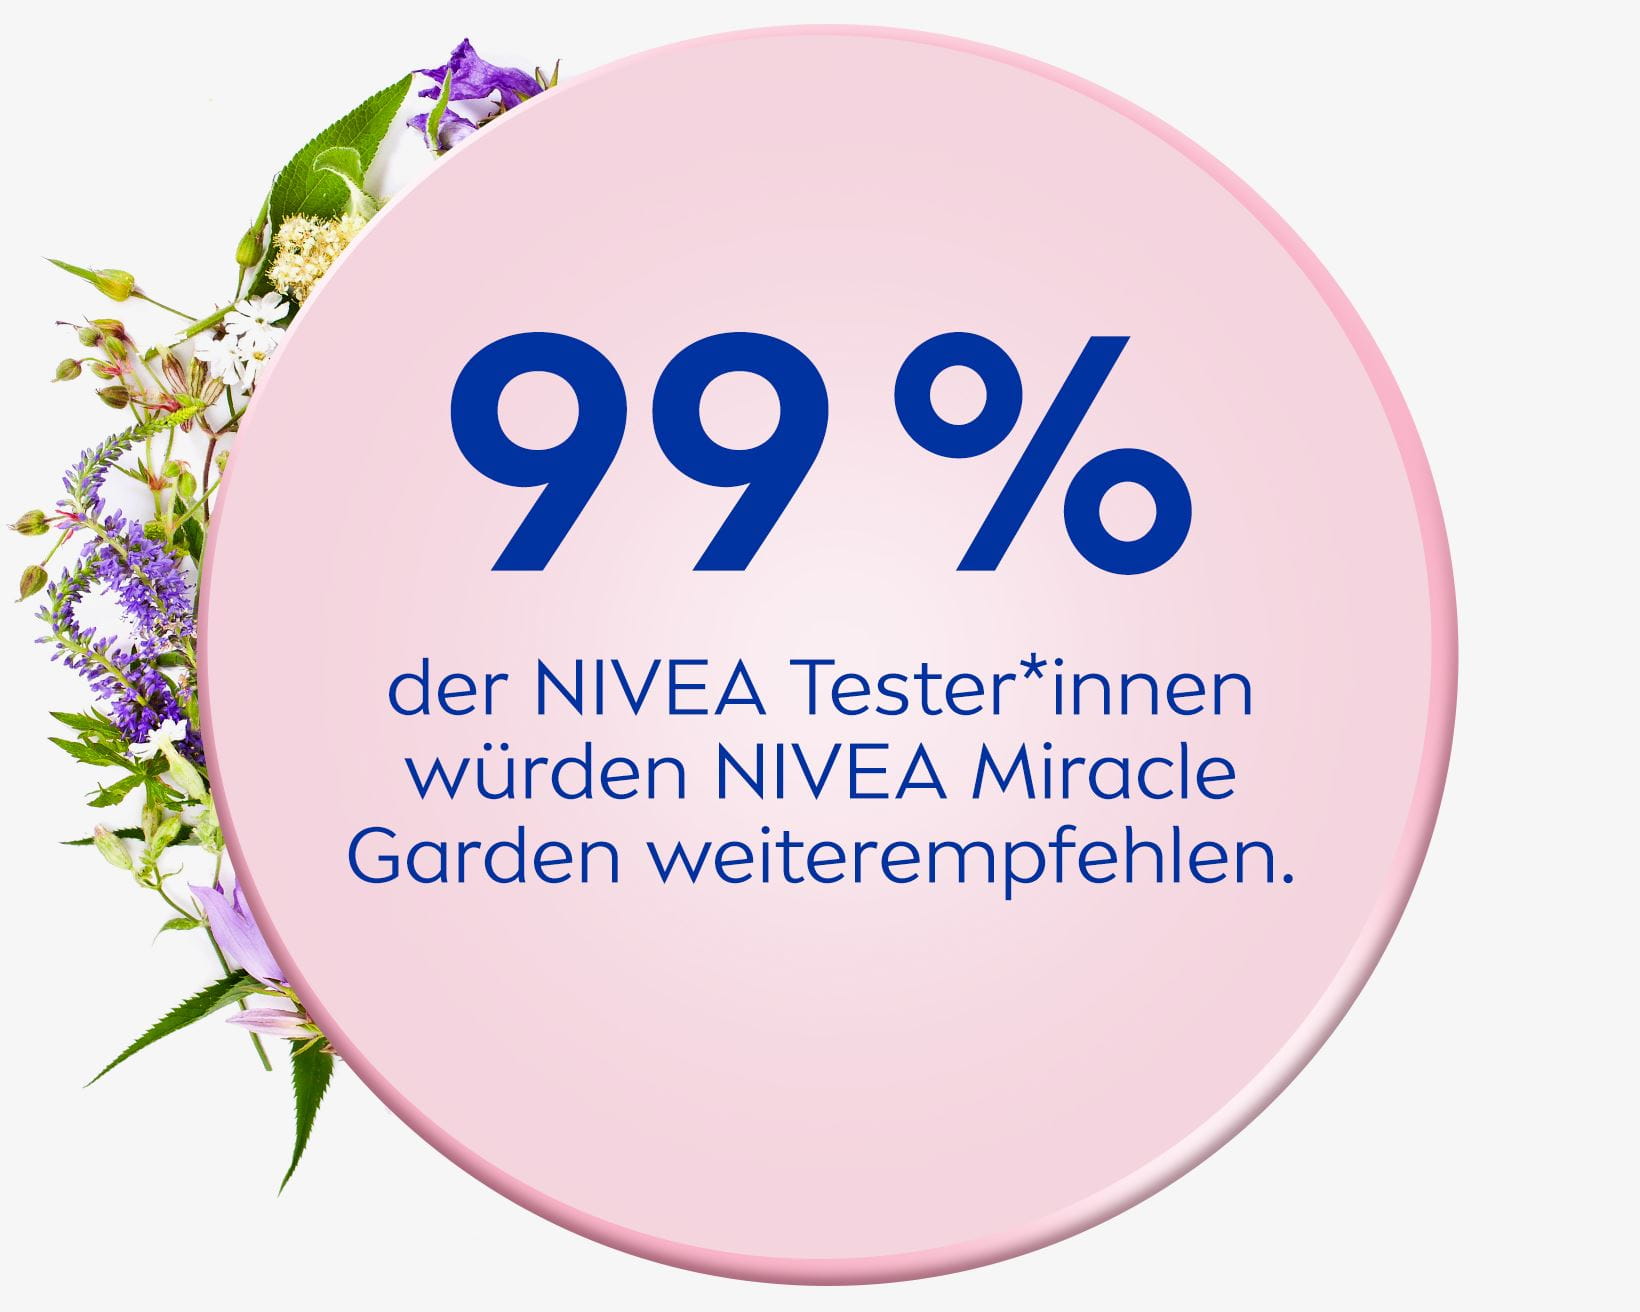 99 % der NIVEA Tester*innen würden NIVEA Miracle Garden empfehlen.